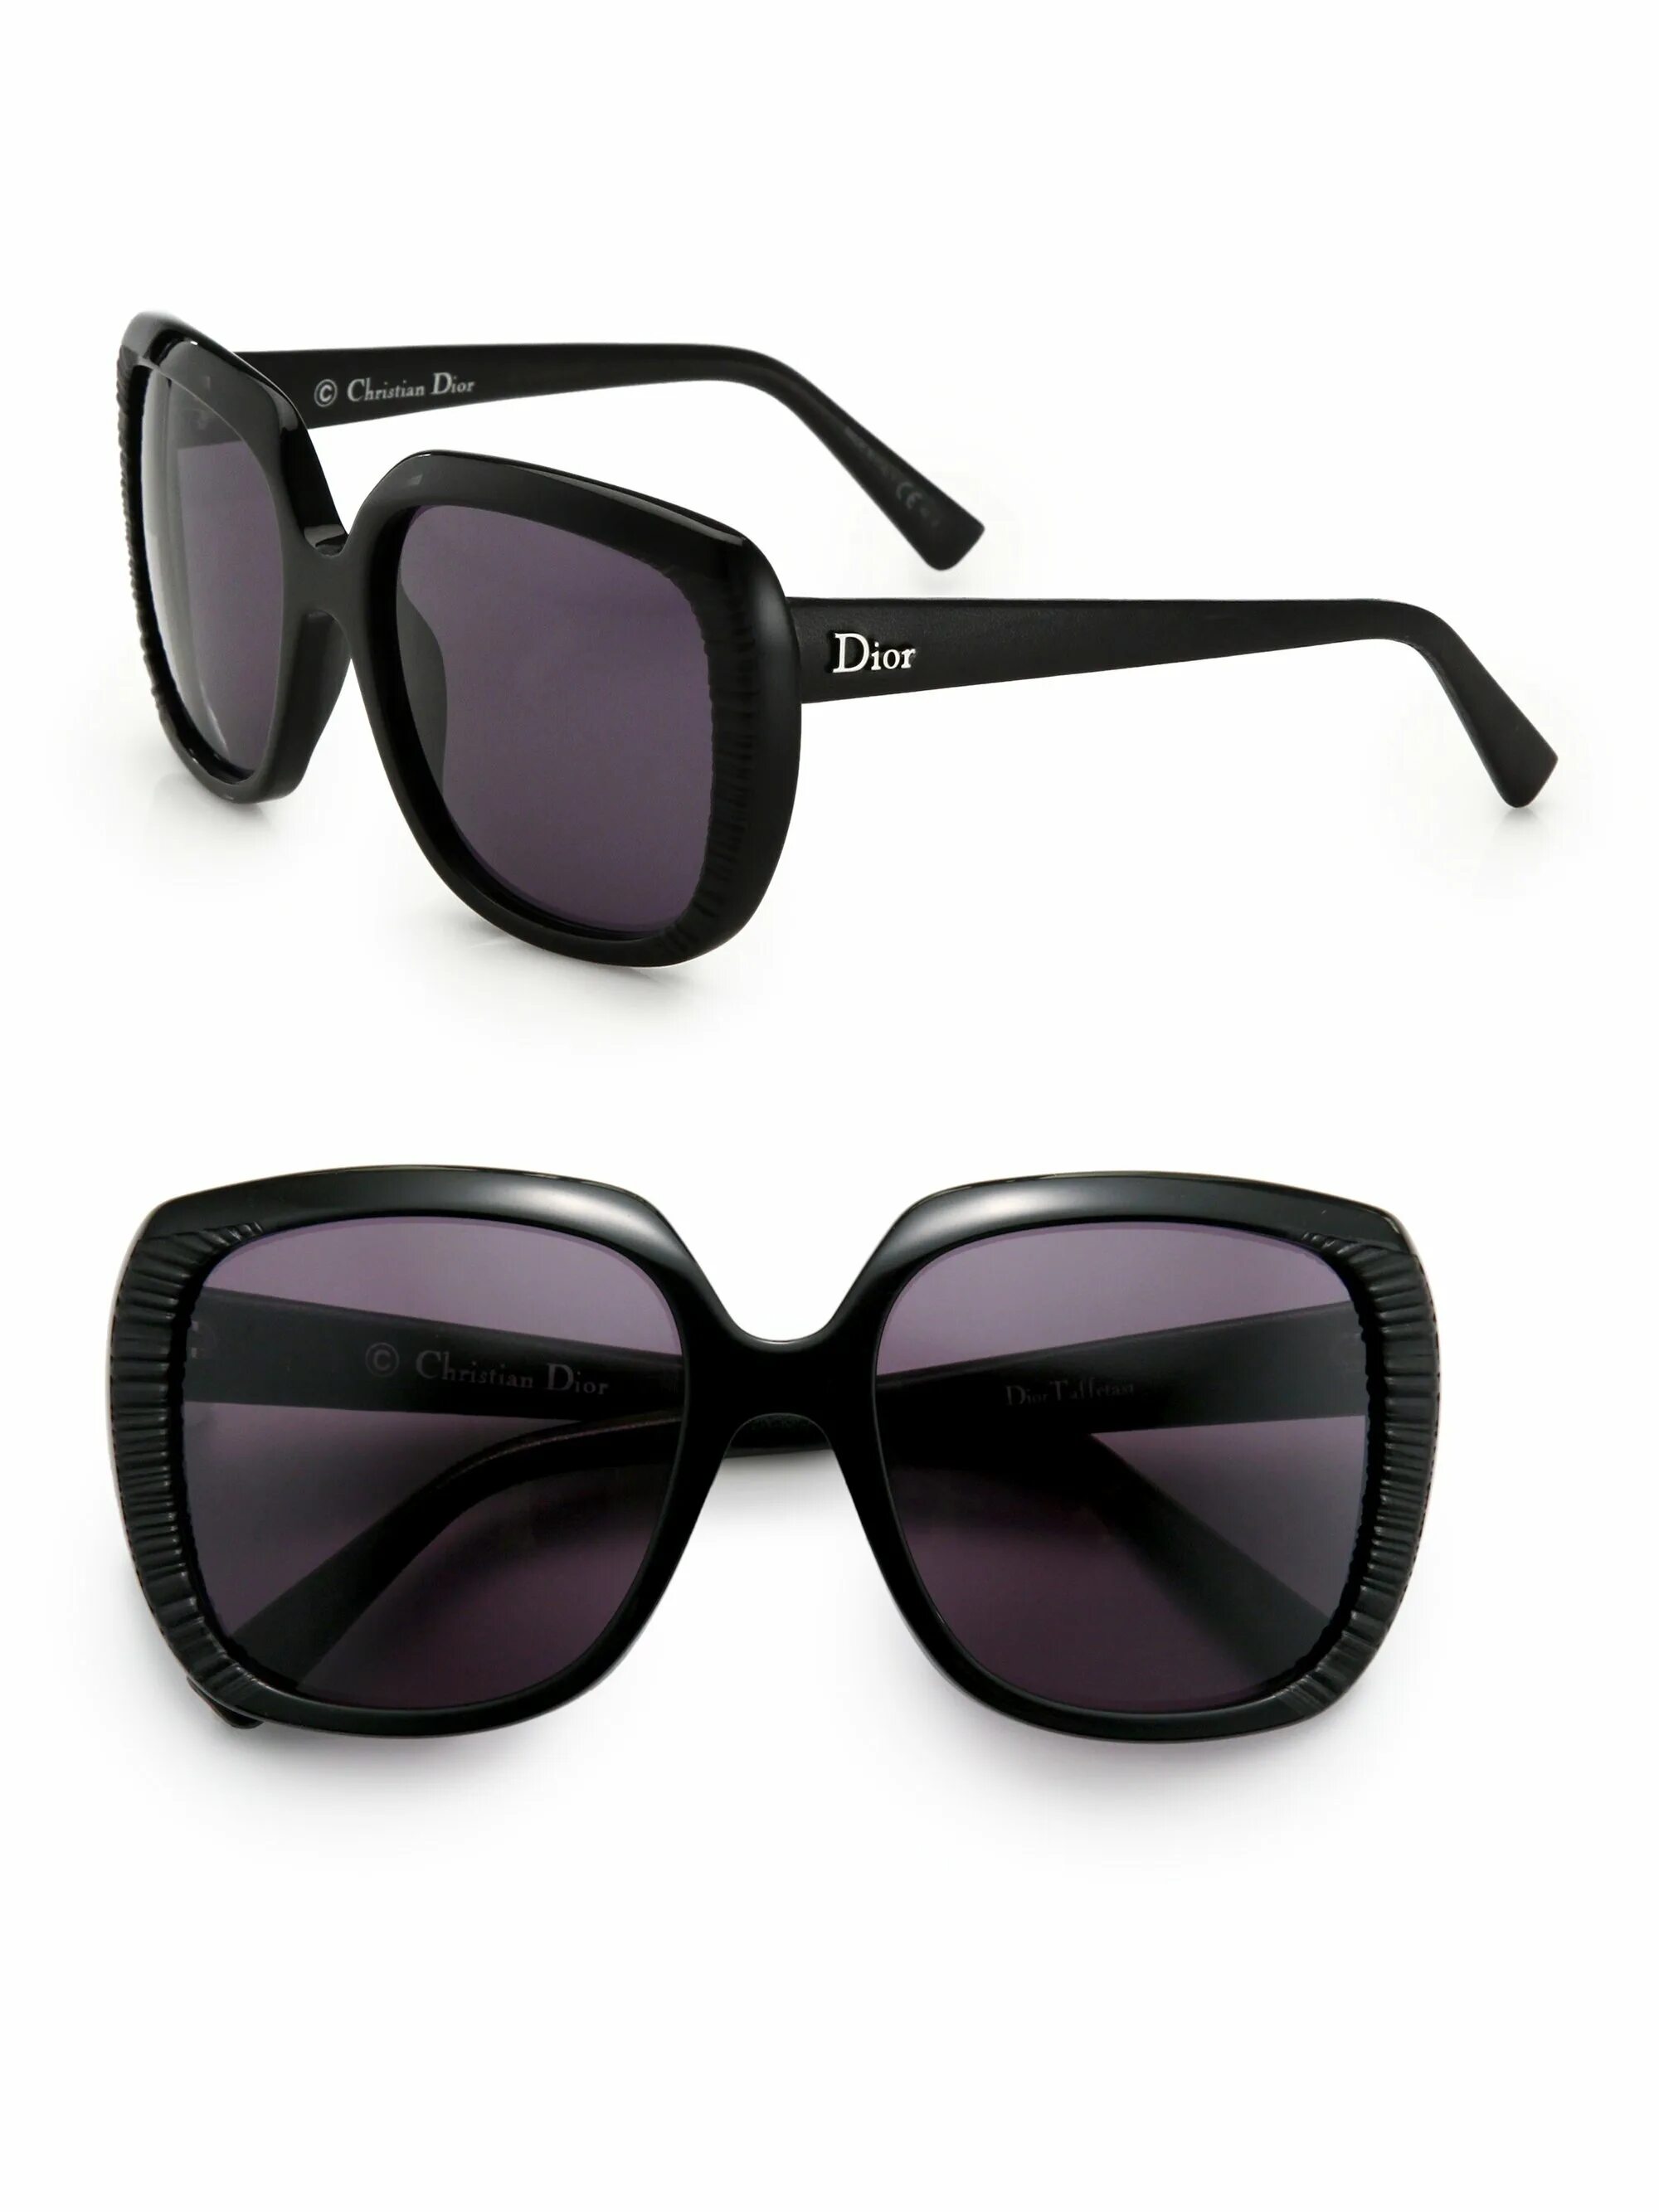 Очки Christian Dior Wayfarer. Очки Кристиан диор 2023. Dior Taffetas очки. Солнечные очки Christian Dior.